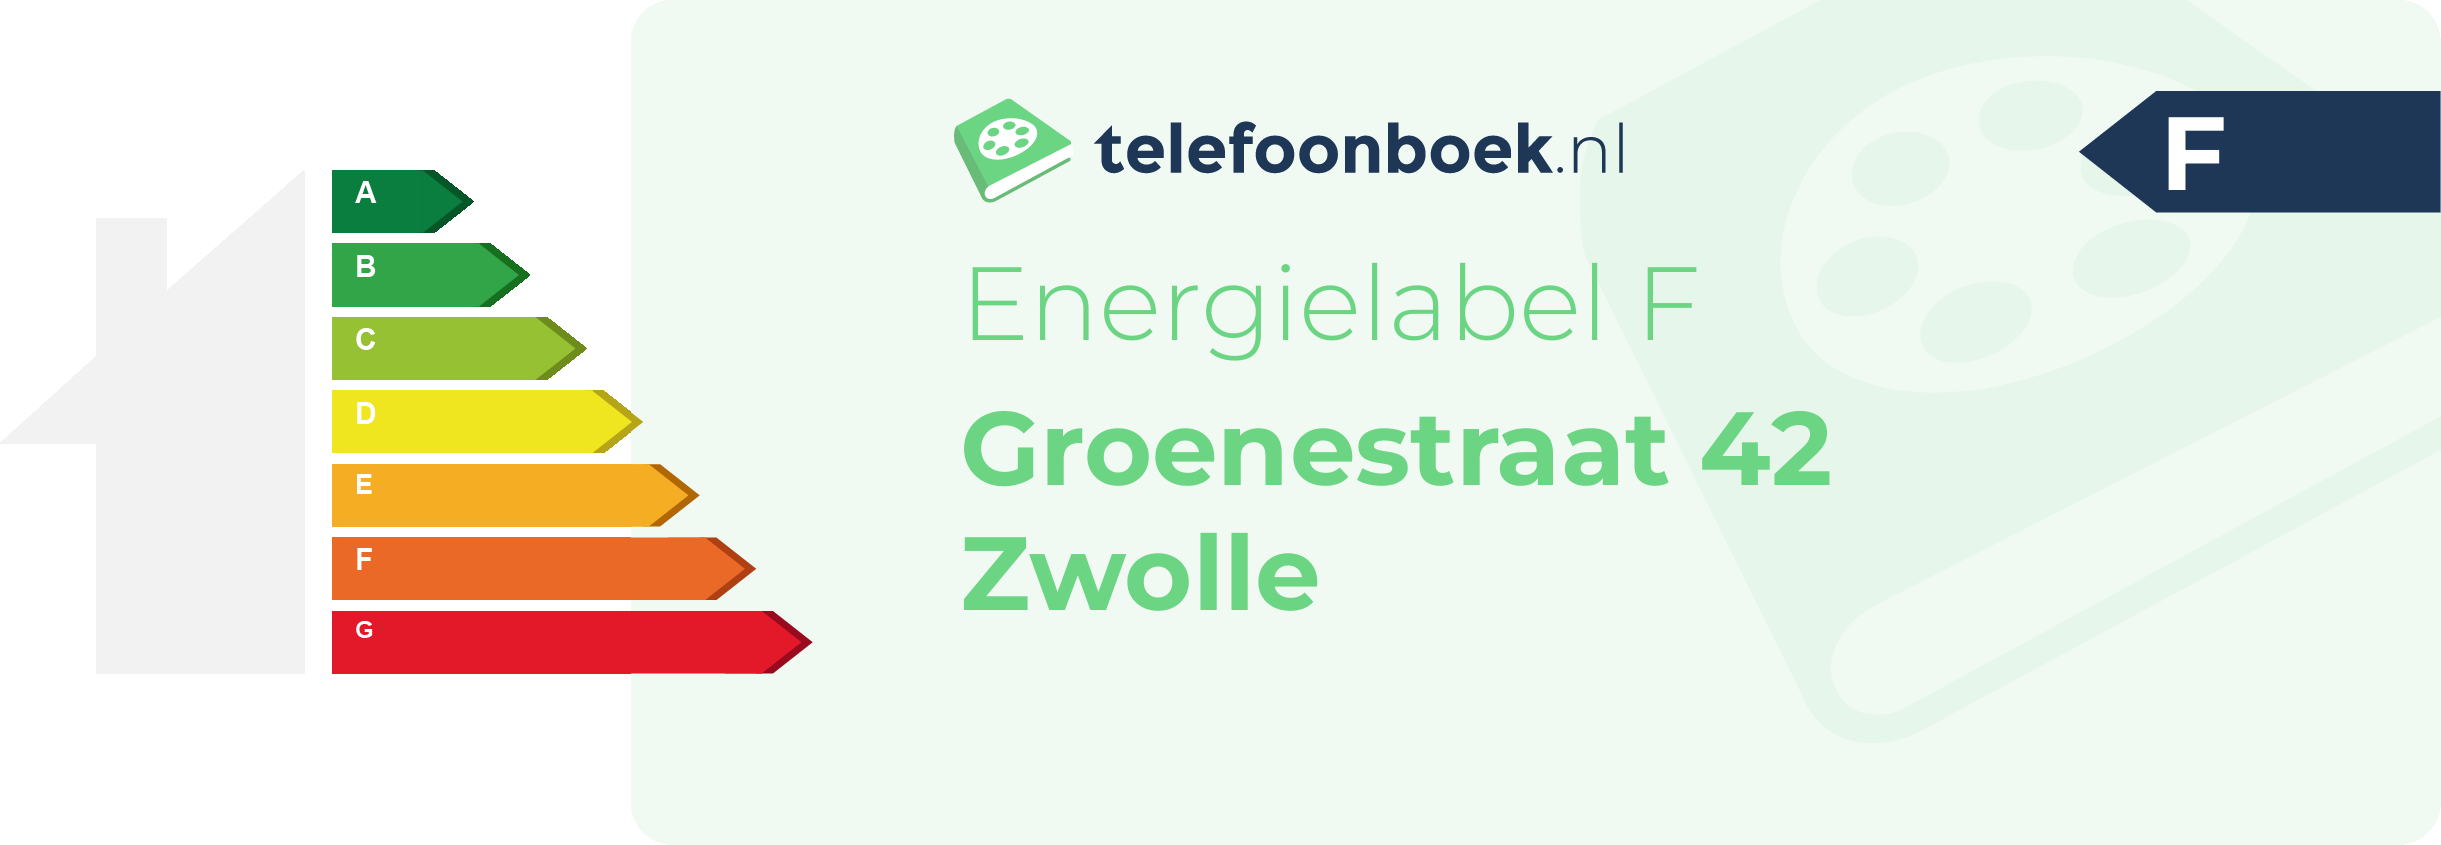 Energielabel Groenestraat 42 Zwolle